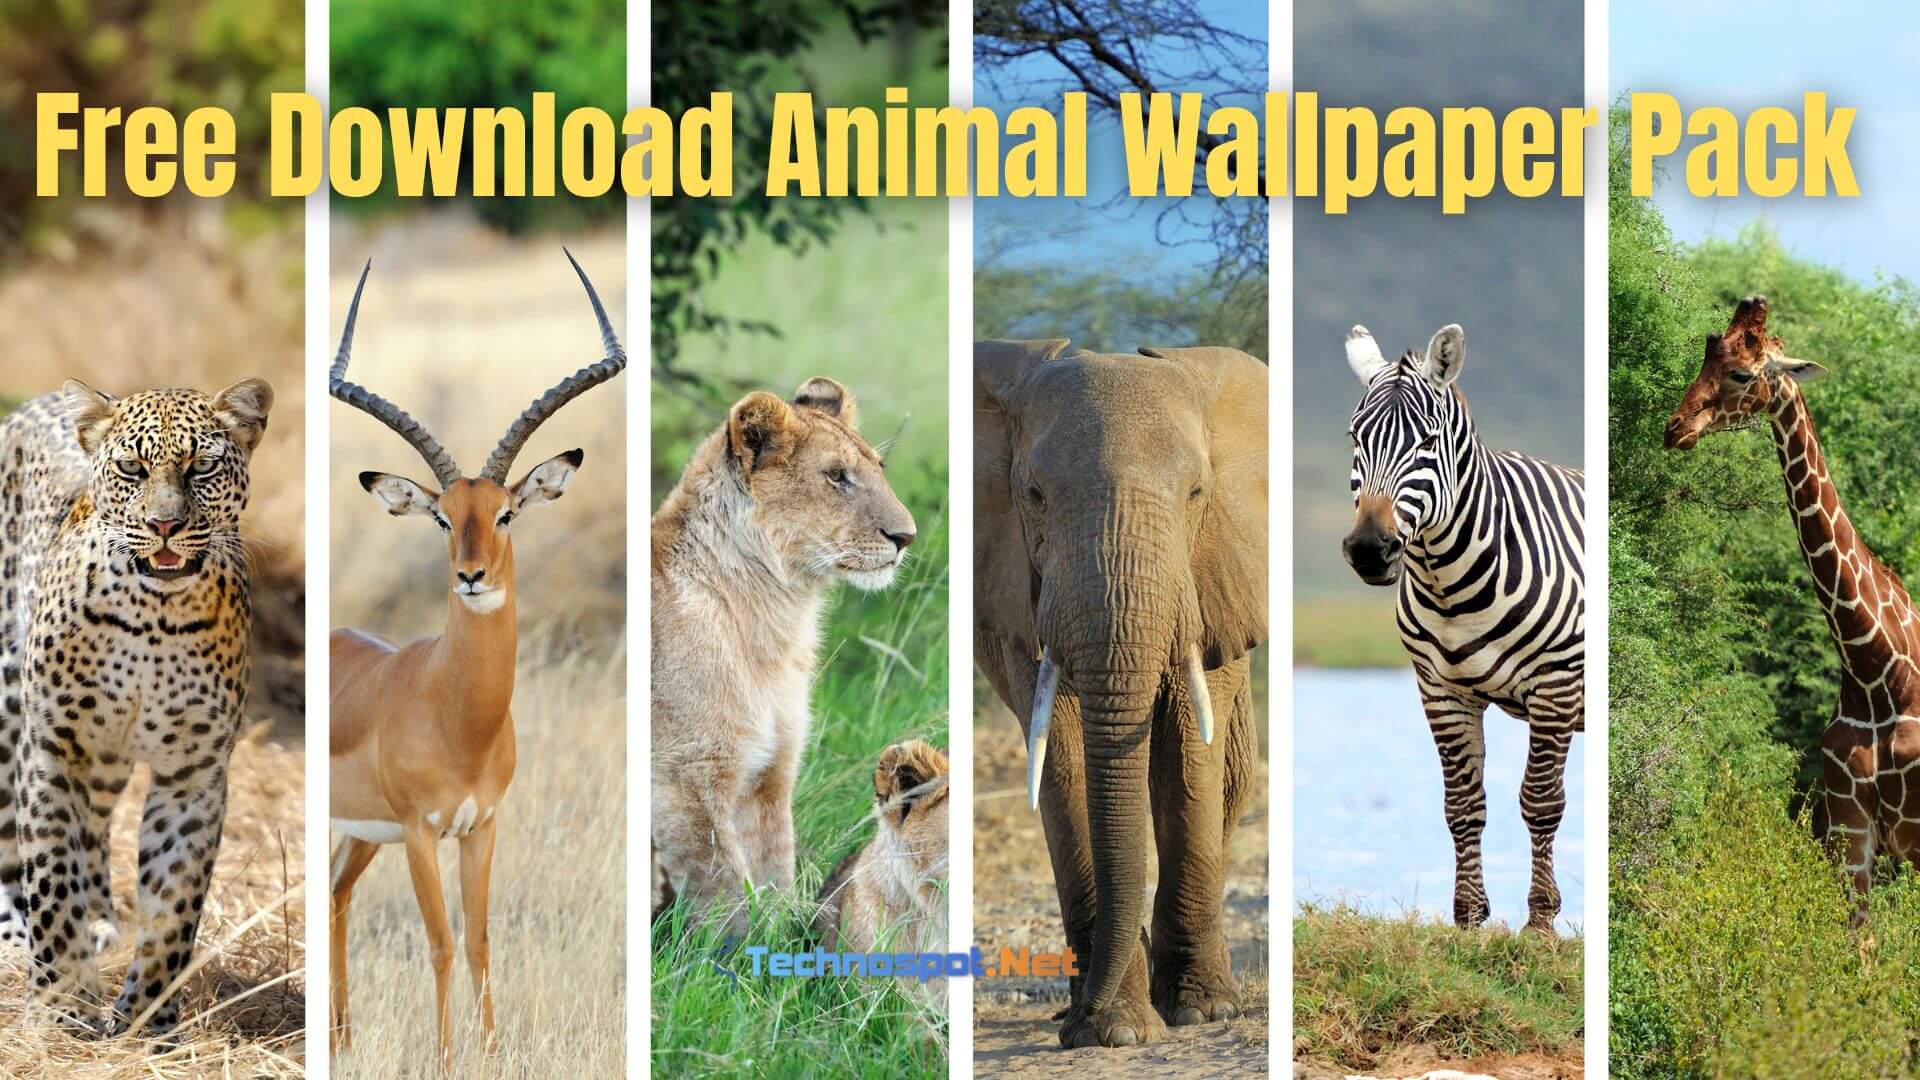 Free Download Animal Wallpaper Pack (Free)